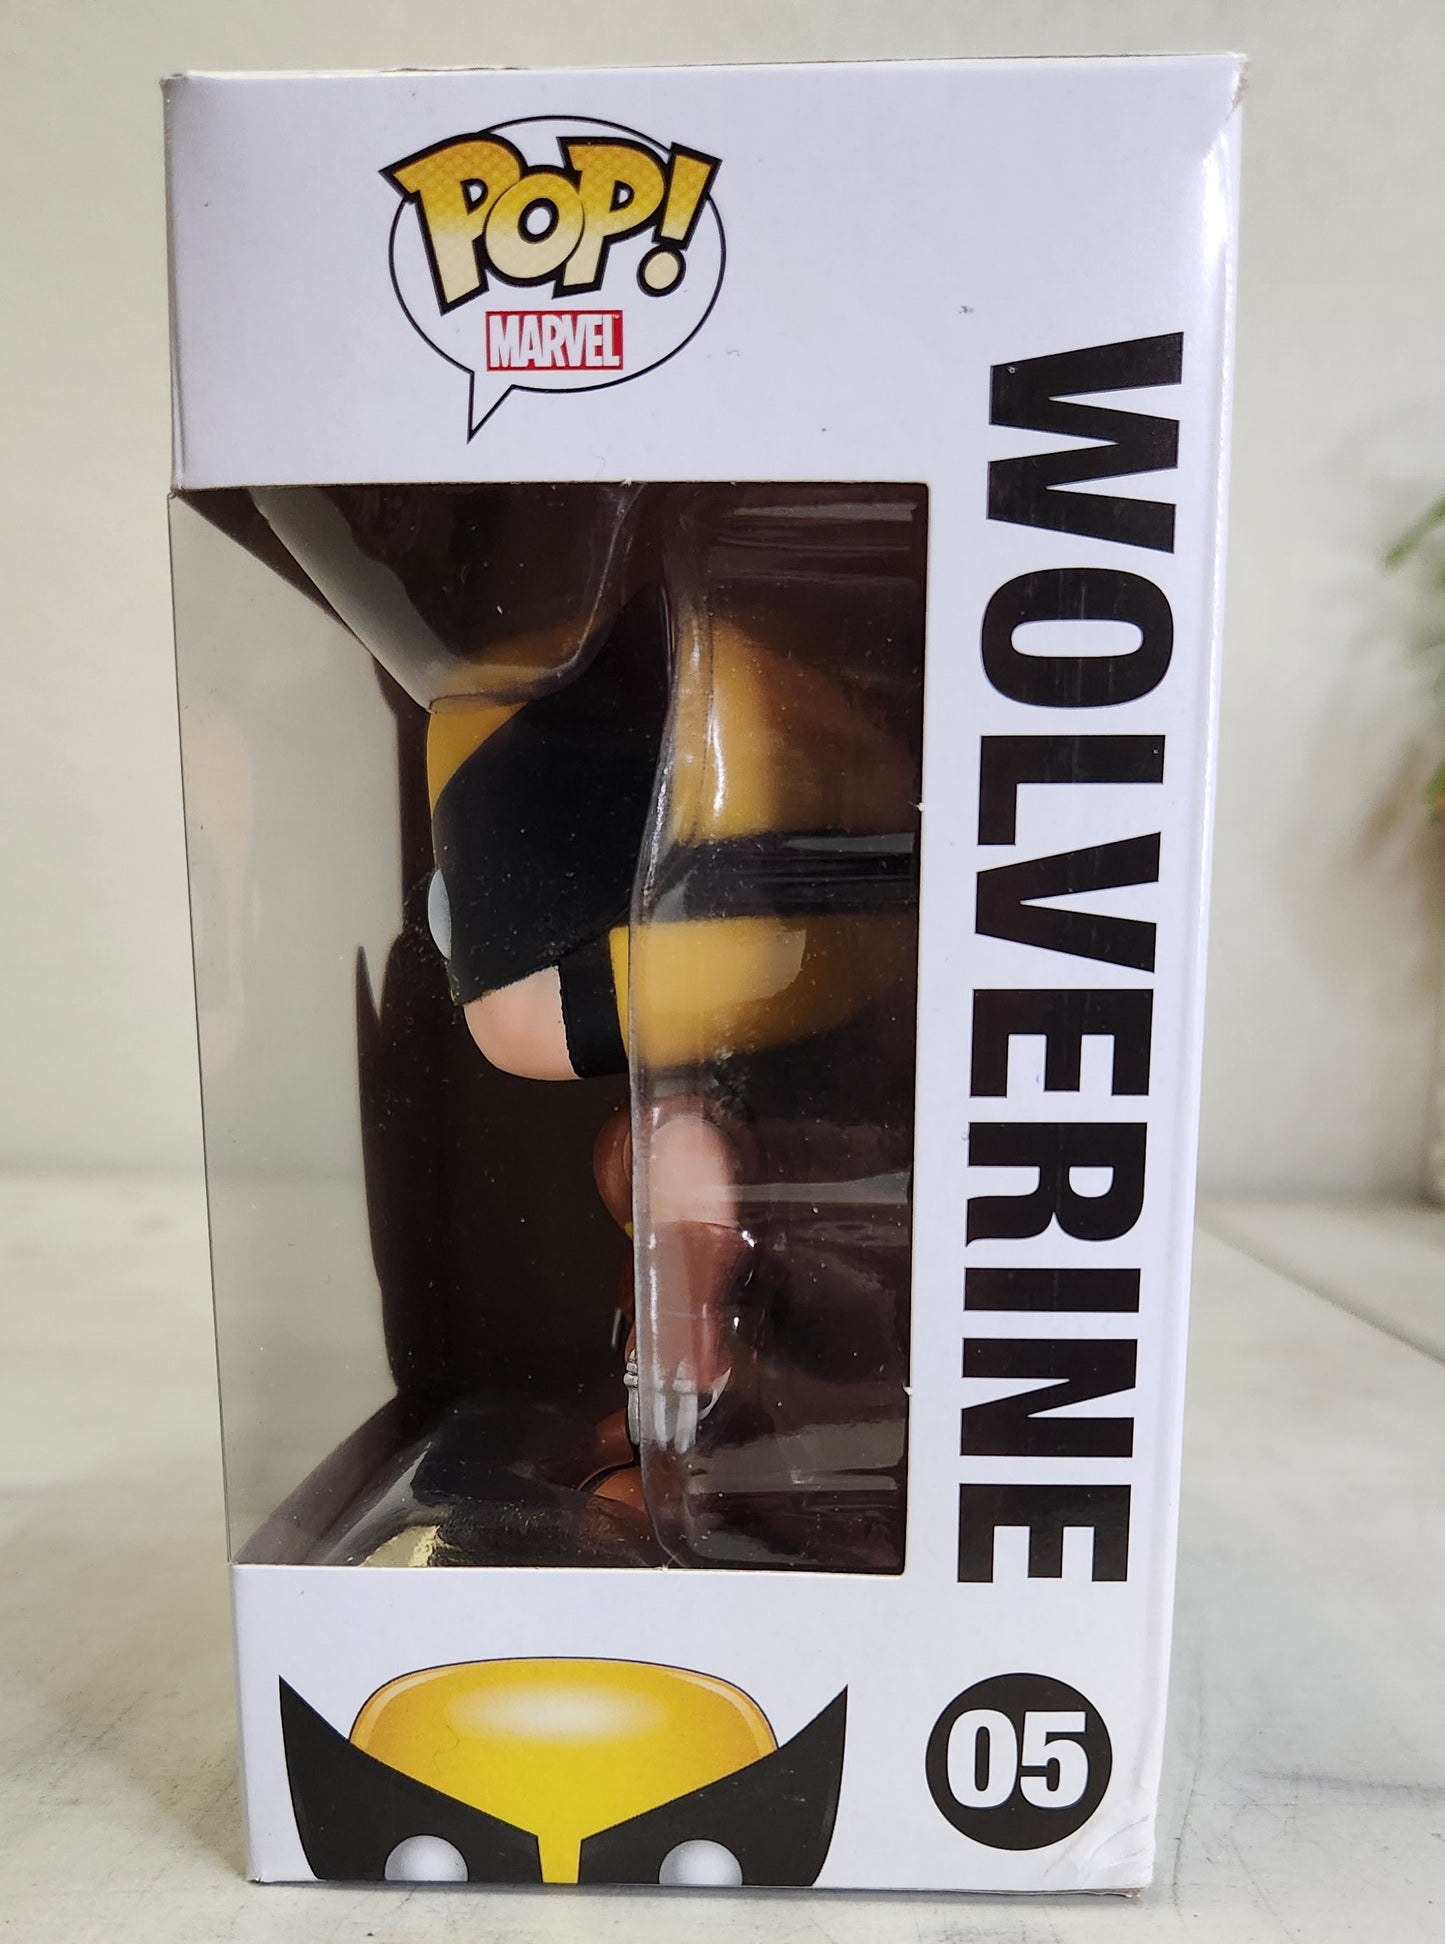 Wolverine POP! Zapp Exclusive (No Sticker) - Marvel - 05